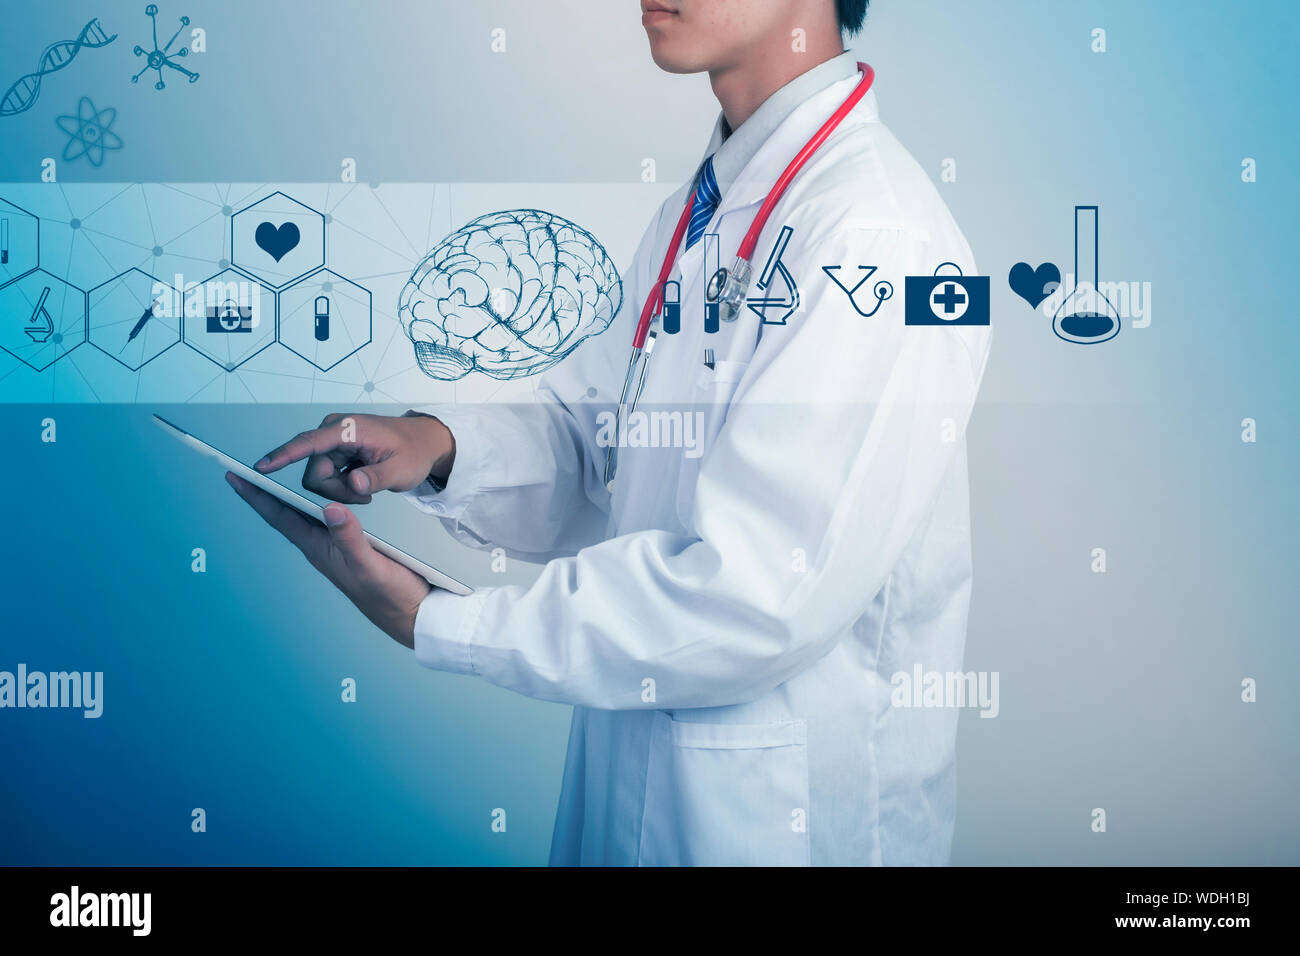 Imagen Digital de médico utilizando Tablet por diversos símbolos contra el fondo azul. Foto de stock